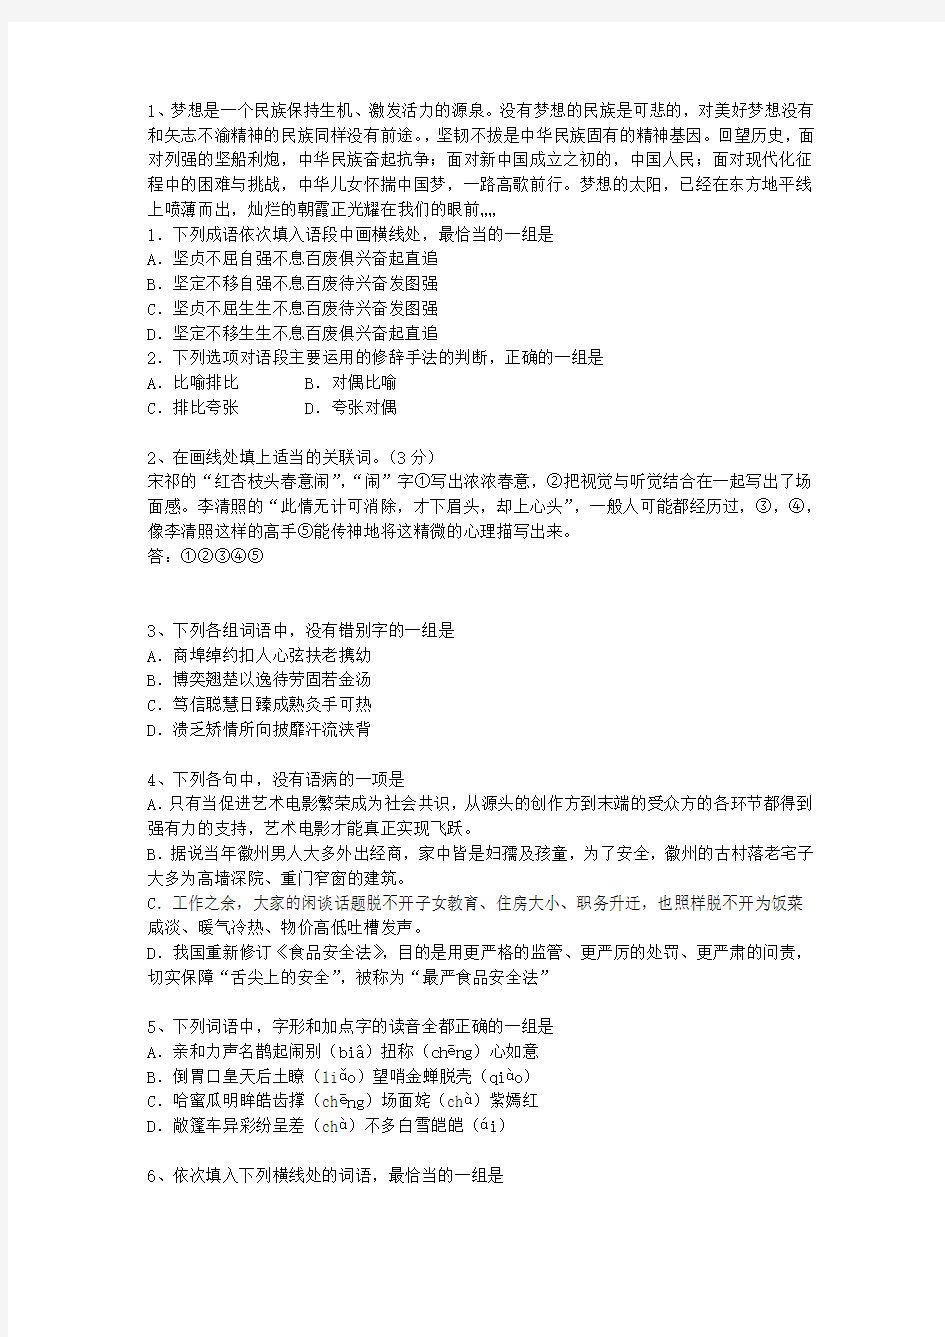 2015湖南省高考语文试卷答案、考点详解以及2016预测最新考试试题库